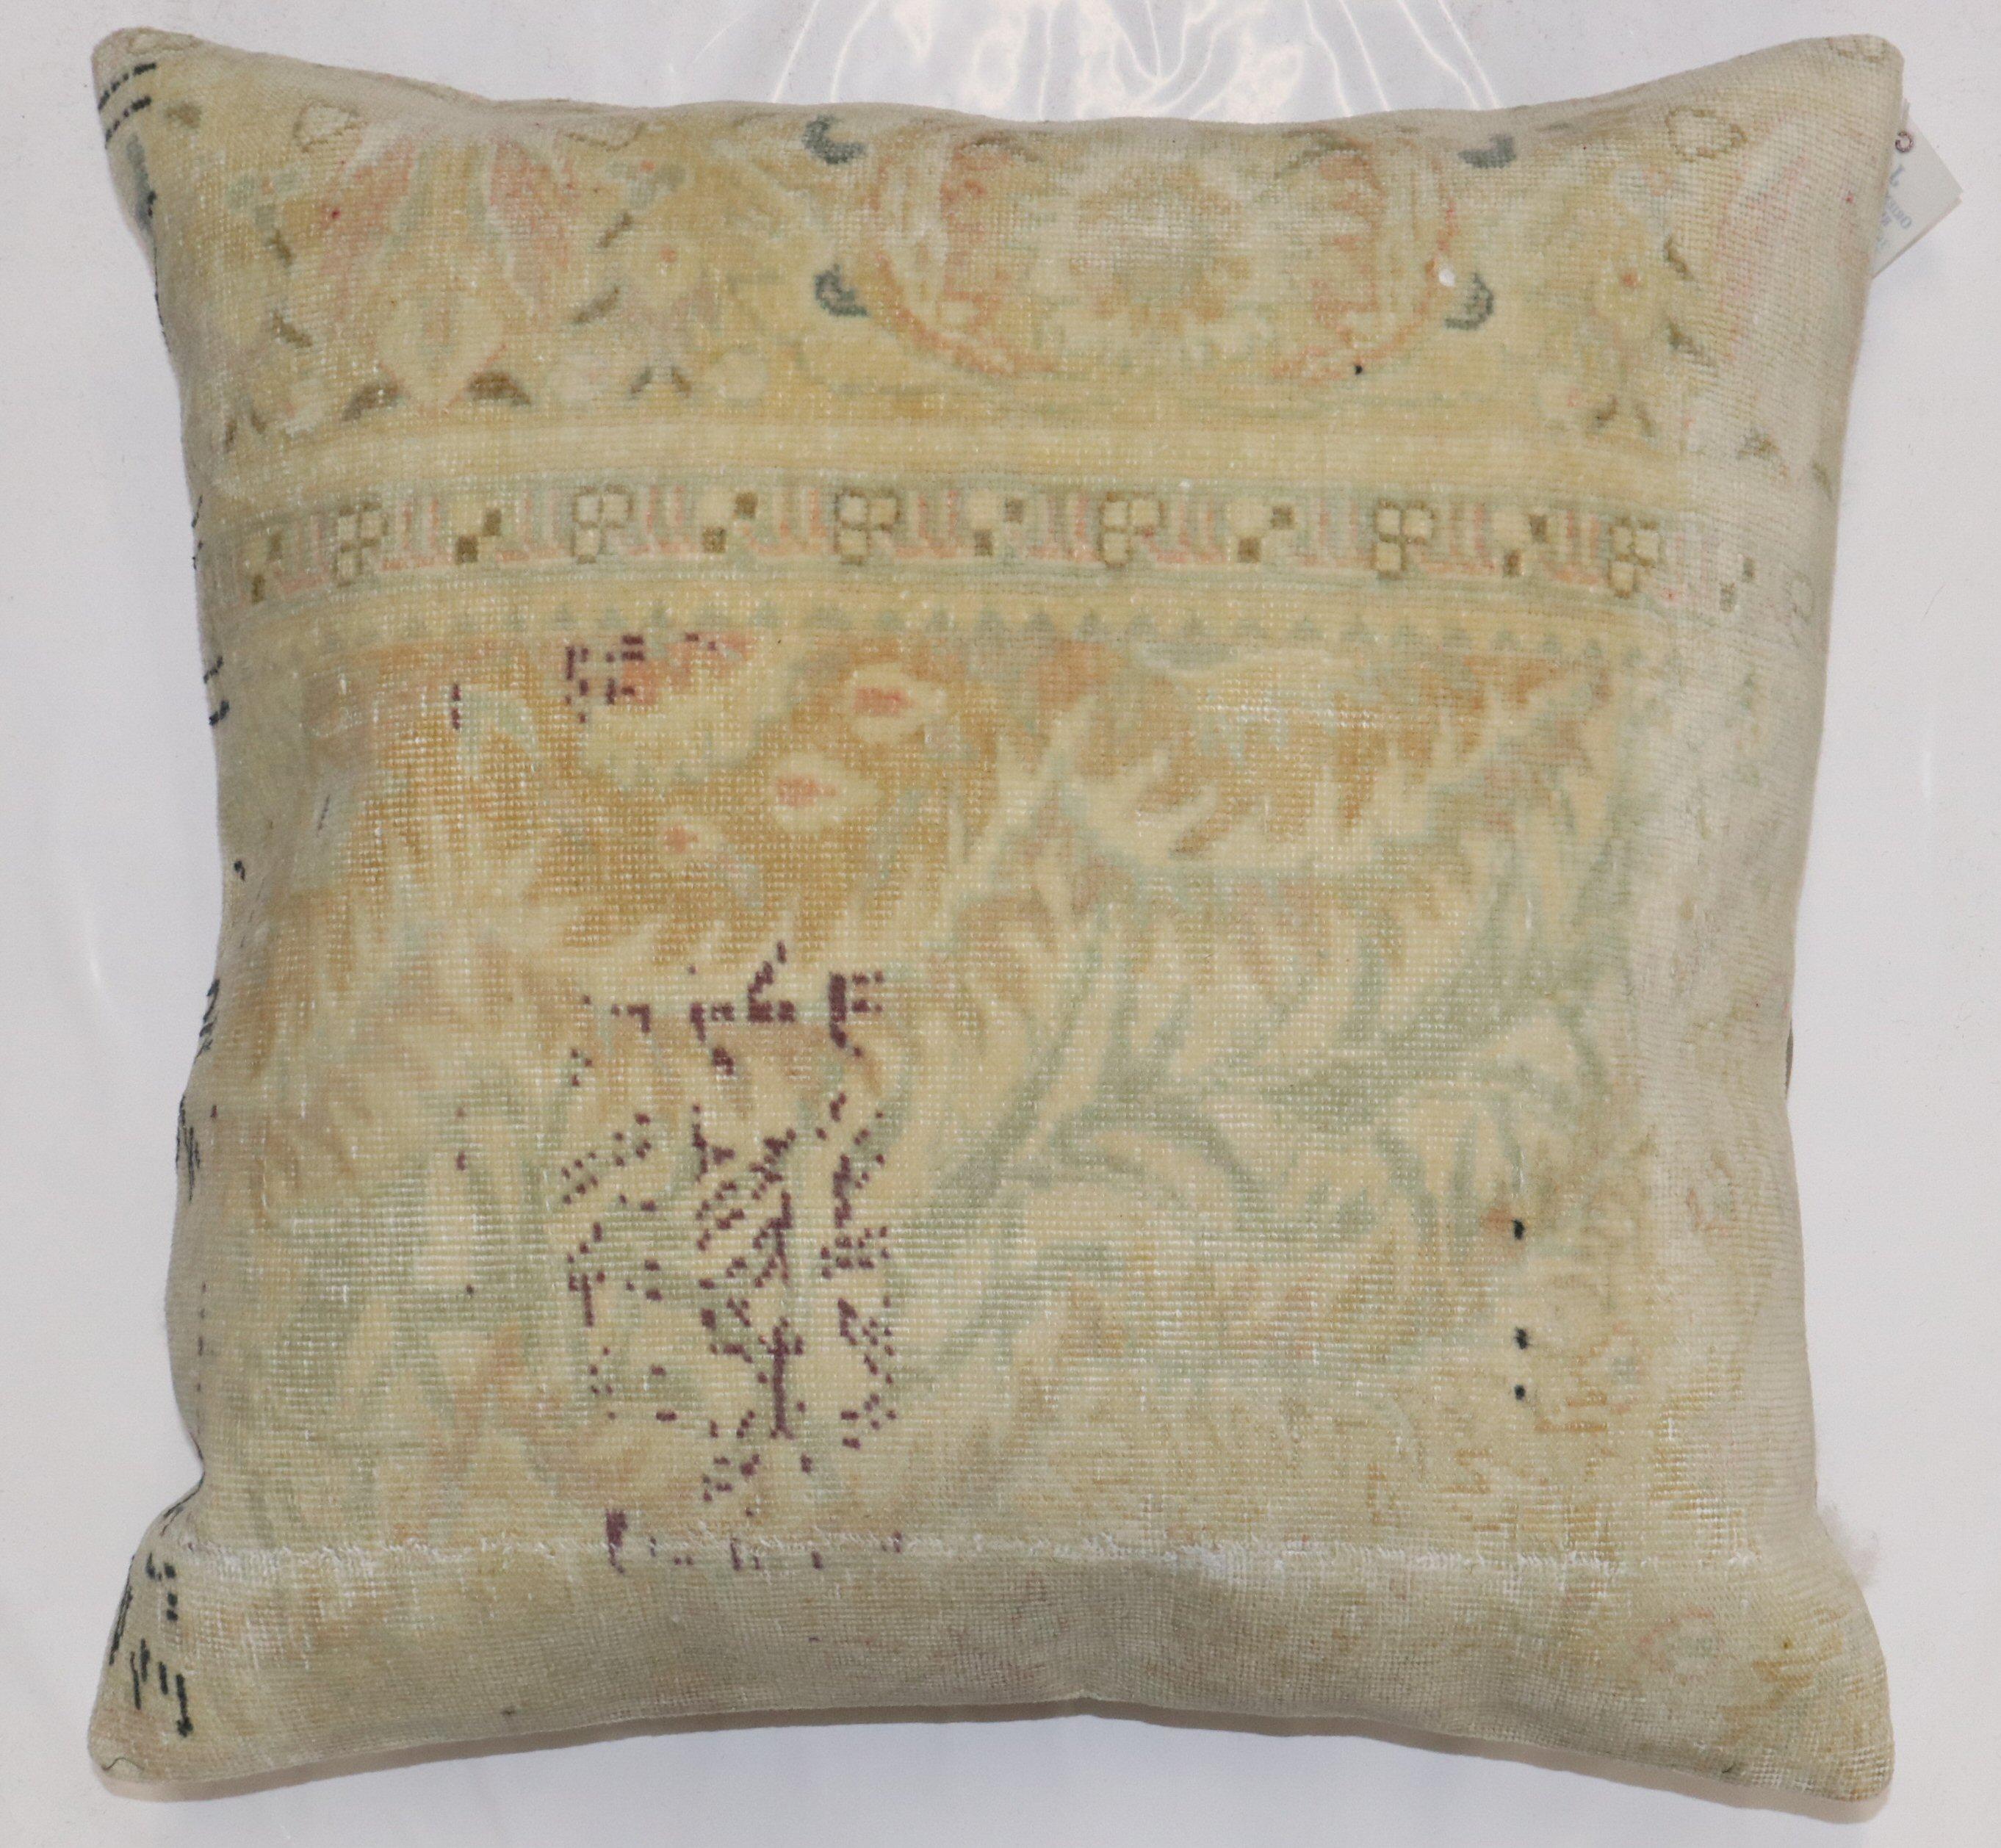 Kissen aus einem türkischen Keysari-Teppich aus der Mitte des 20. Jahrhunderts in Nackenrollengröße. Mit Reißverschluss und Polyfill-Einlage

Maße: 23'' x 23''.